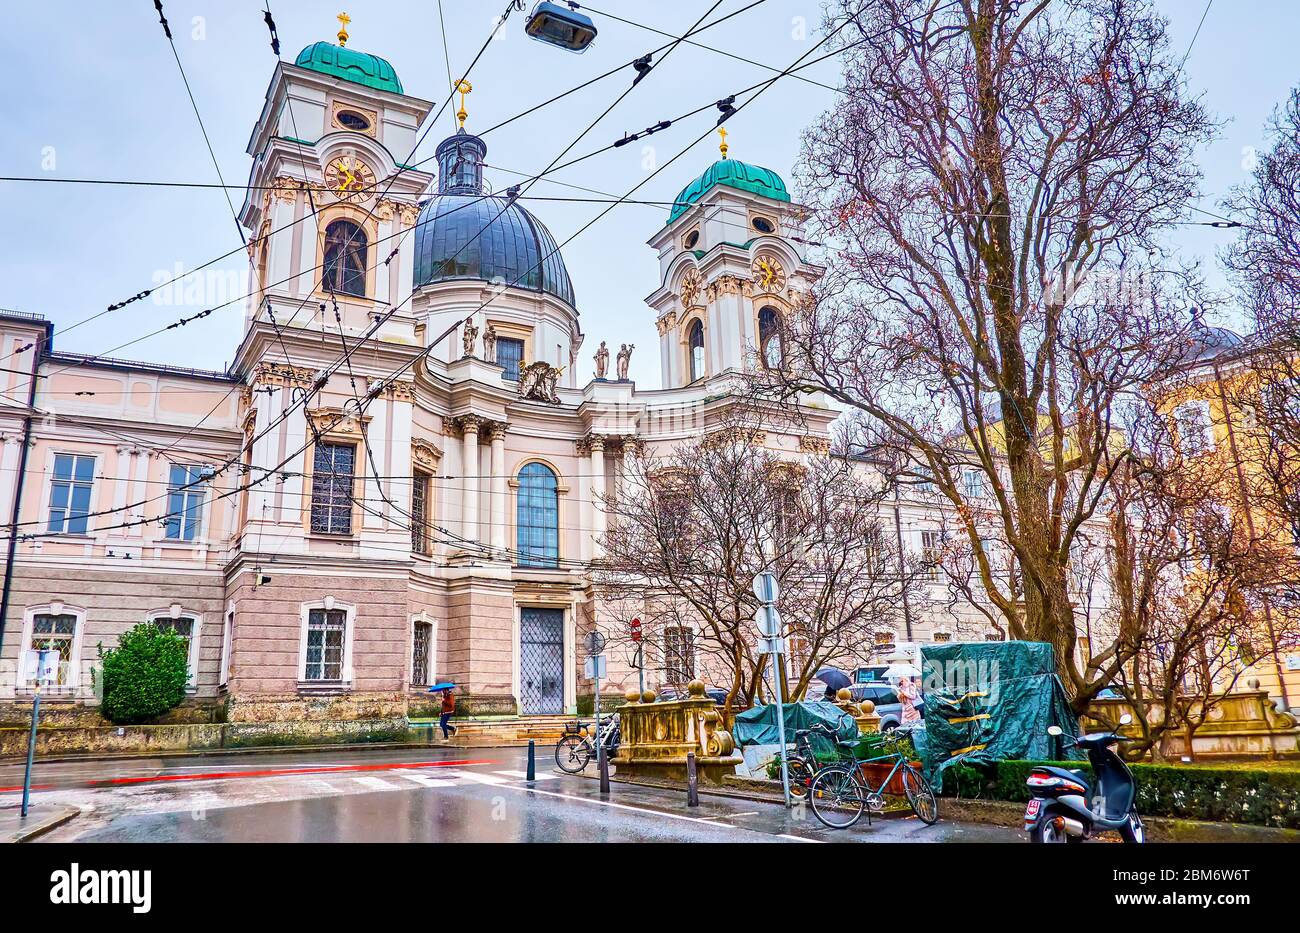 SALZBURG, ÖSTERREICH - 1. MÄRZ 2019: Die prächtige Dreifaltigkeitskirche mit halbrunden Haupteingangstor mit zwei Glockentürmen asides, am 1. März in Stockfoto